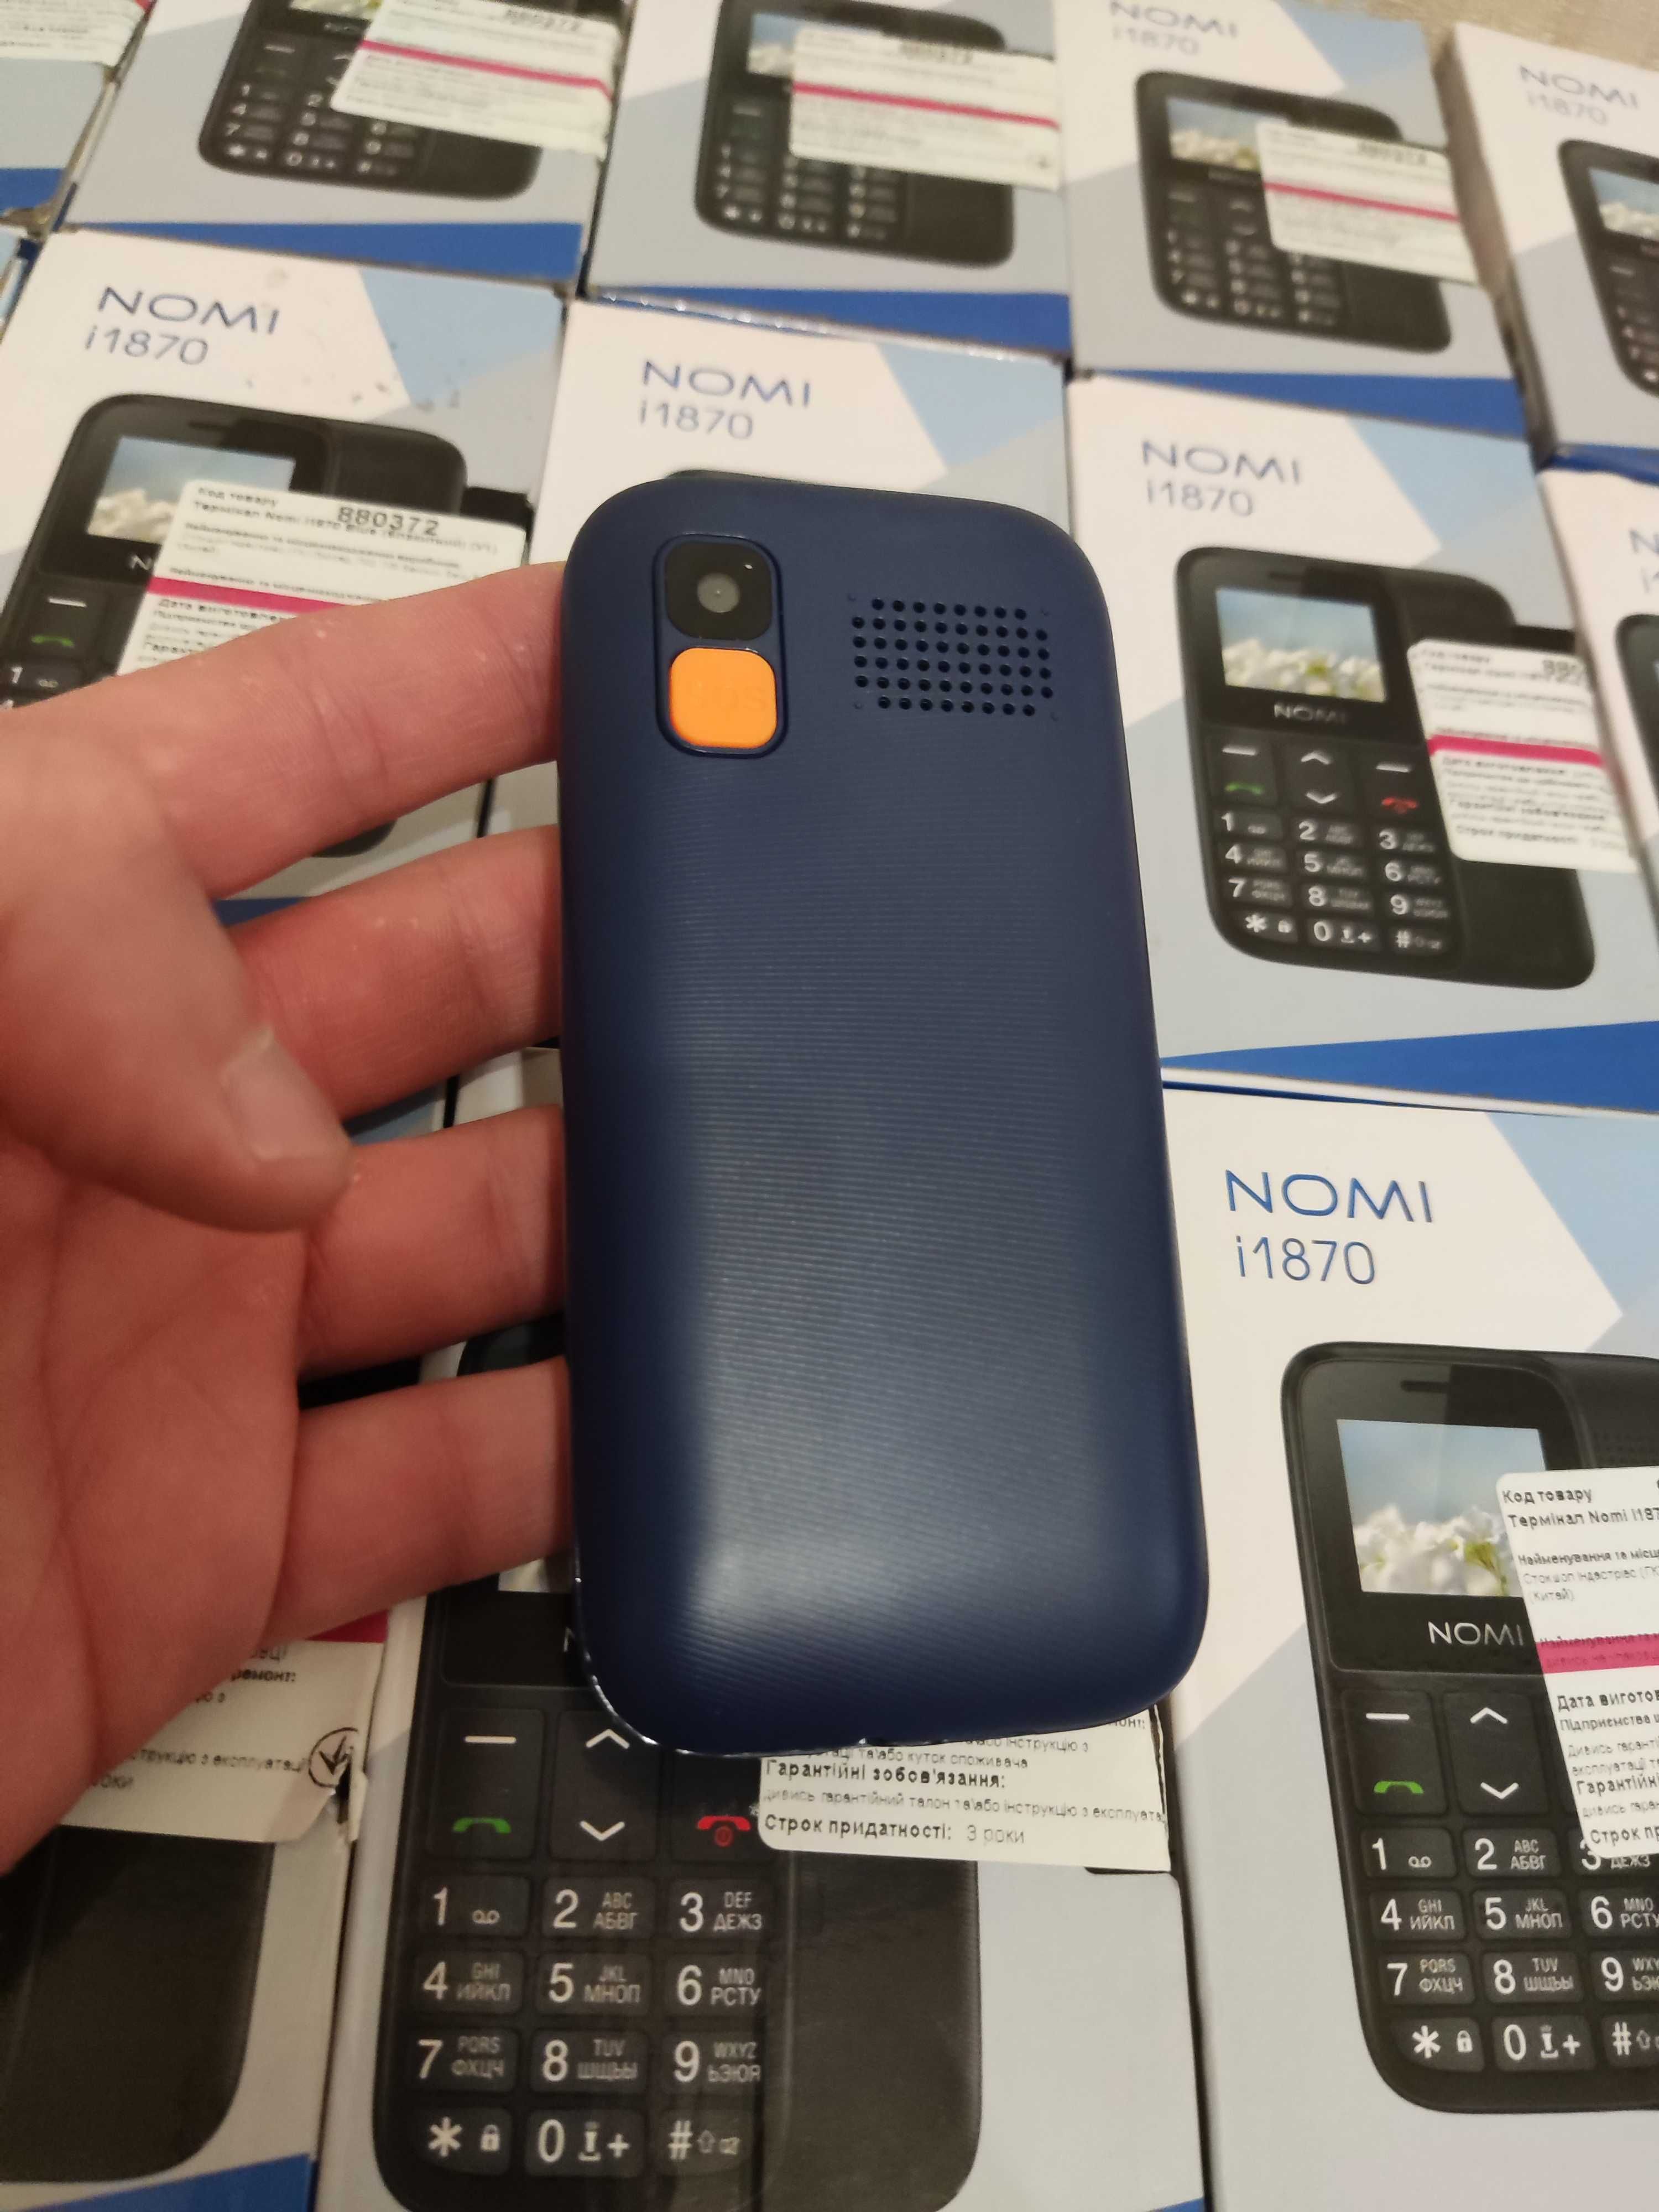 Кнопочный телефон Nomi i1870 большие кнопки и большое меню